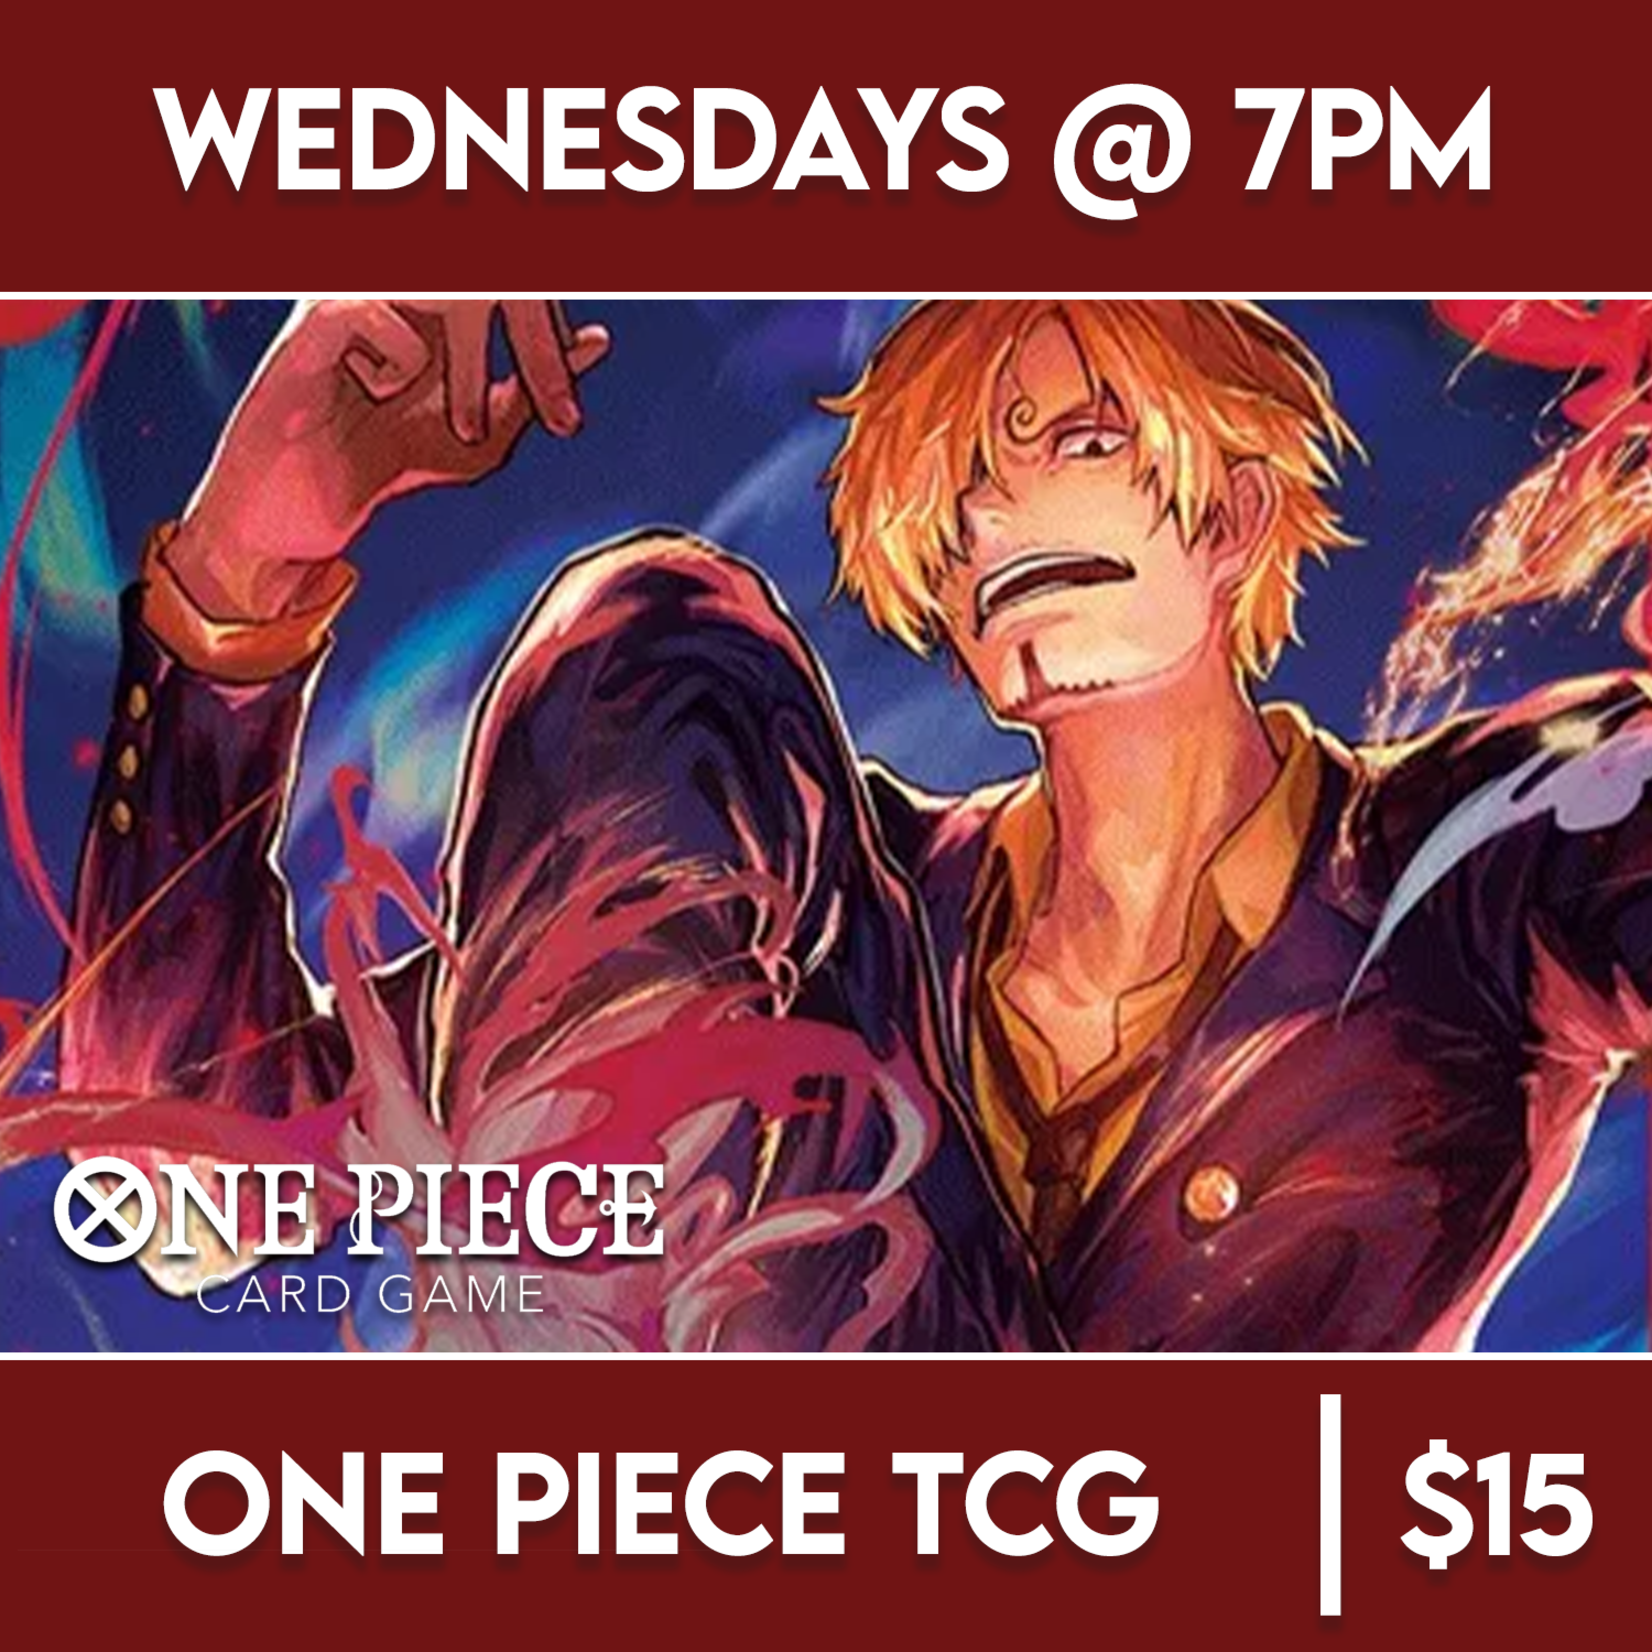 One Piece TCG Events 05/01 Wednesday @ 7 PM - One Piece TCG